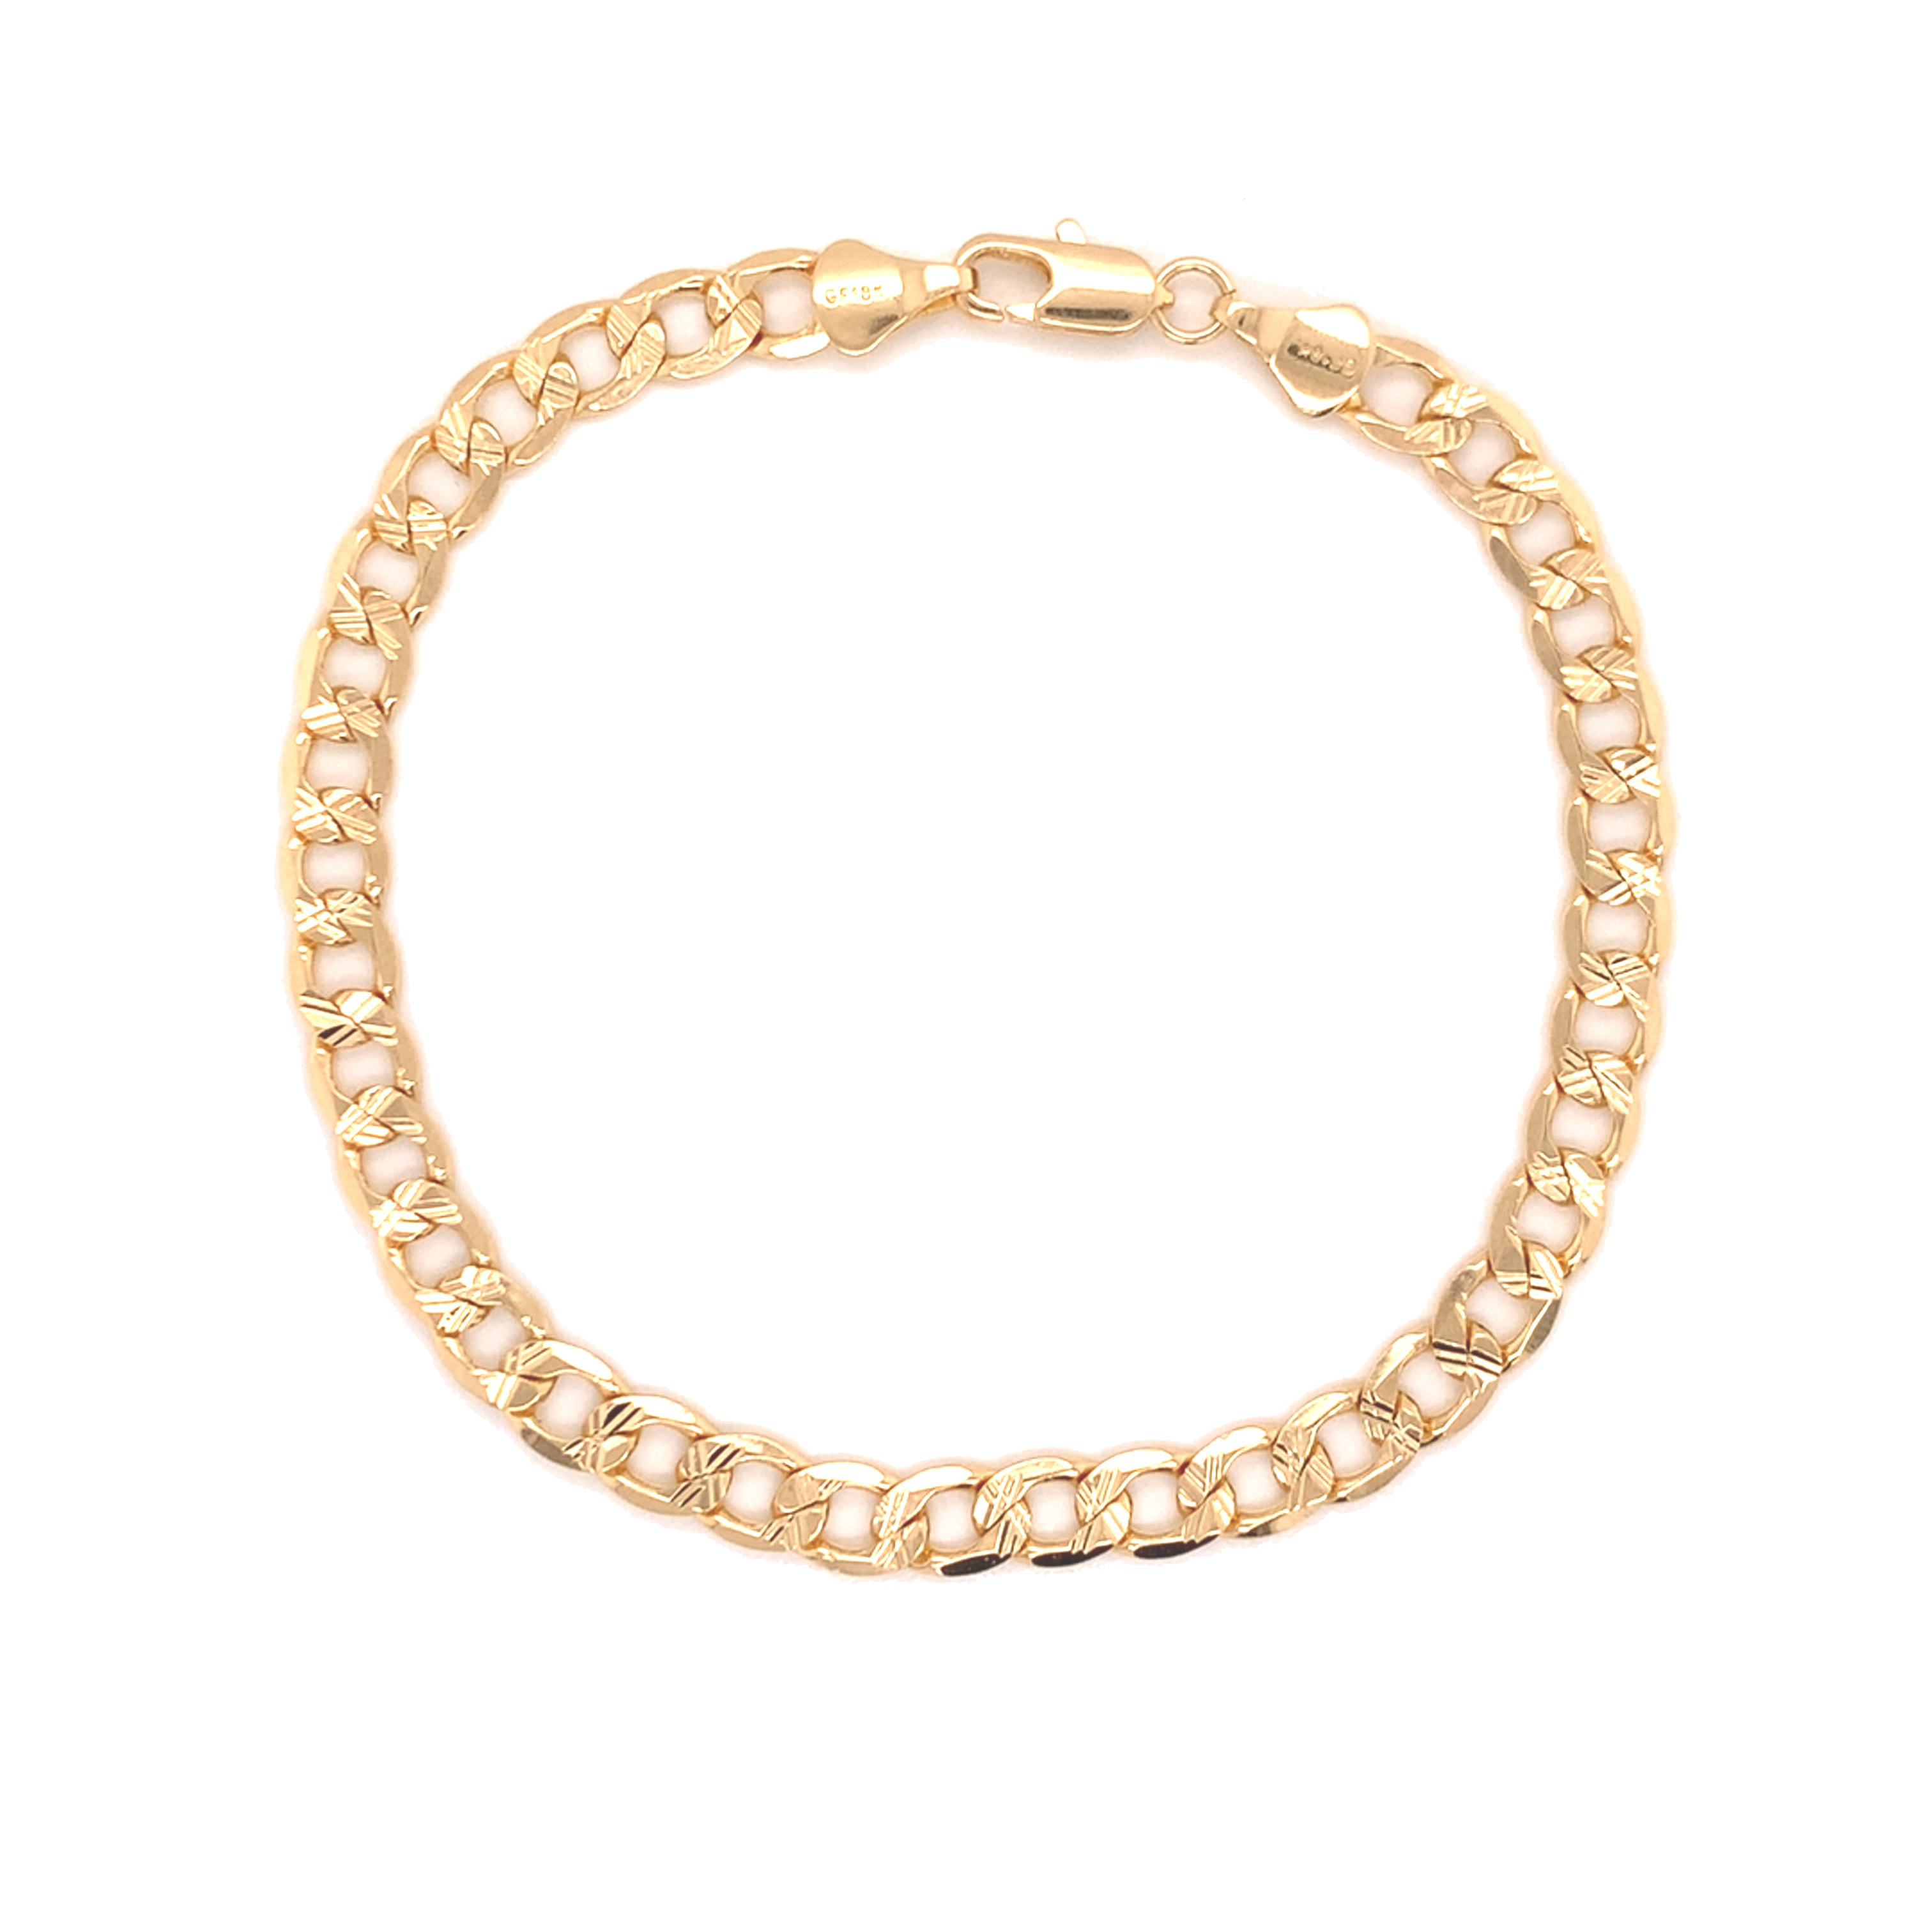 Men's Etched Curb Chain Link Bracelet - Gold Filled - 8.5"